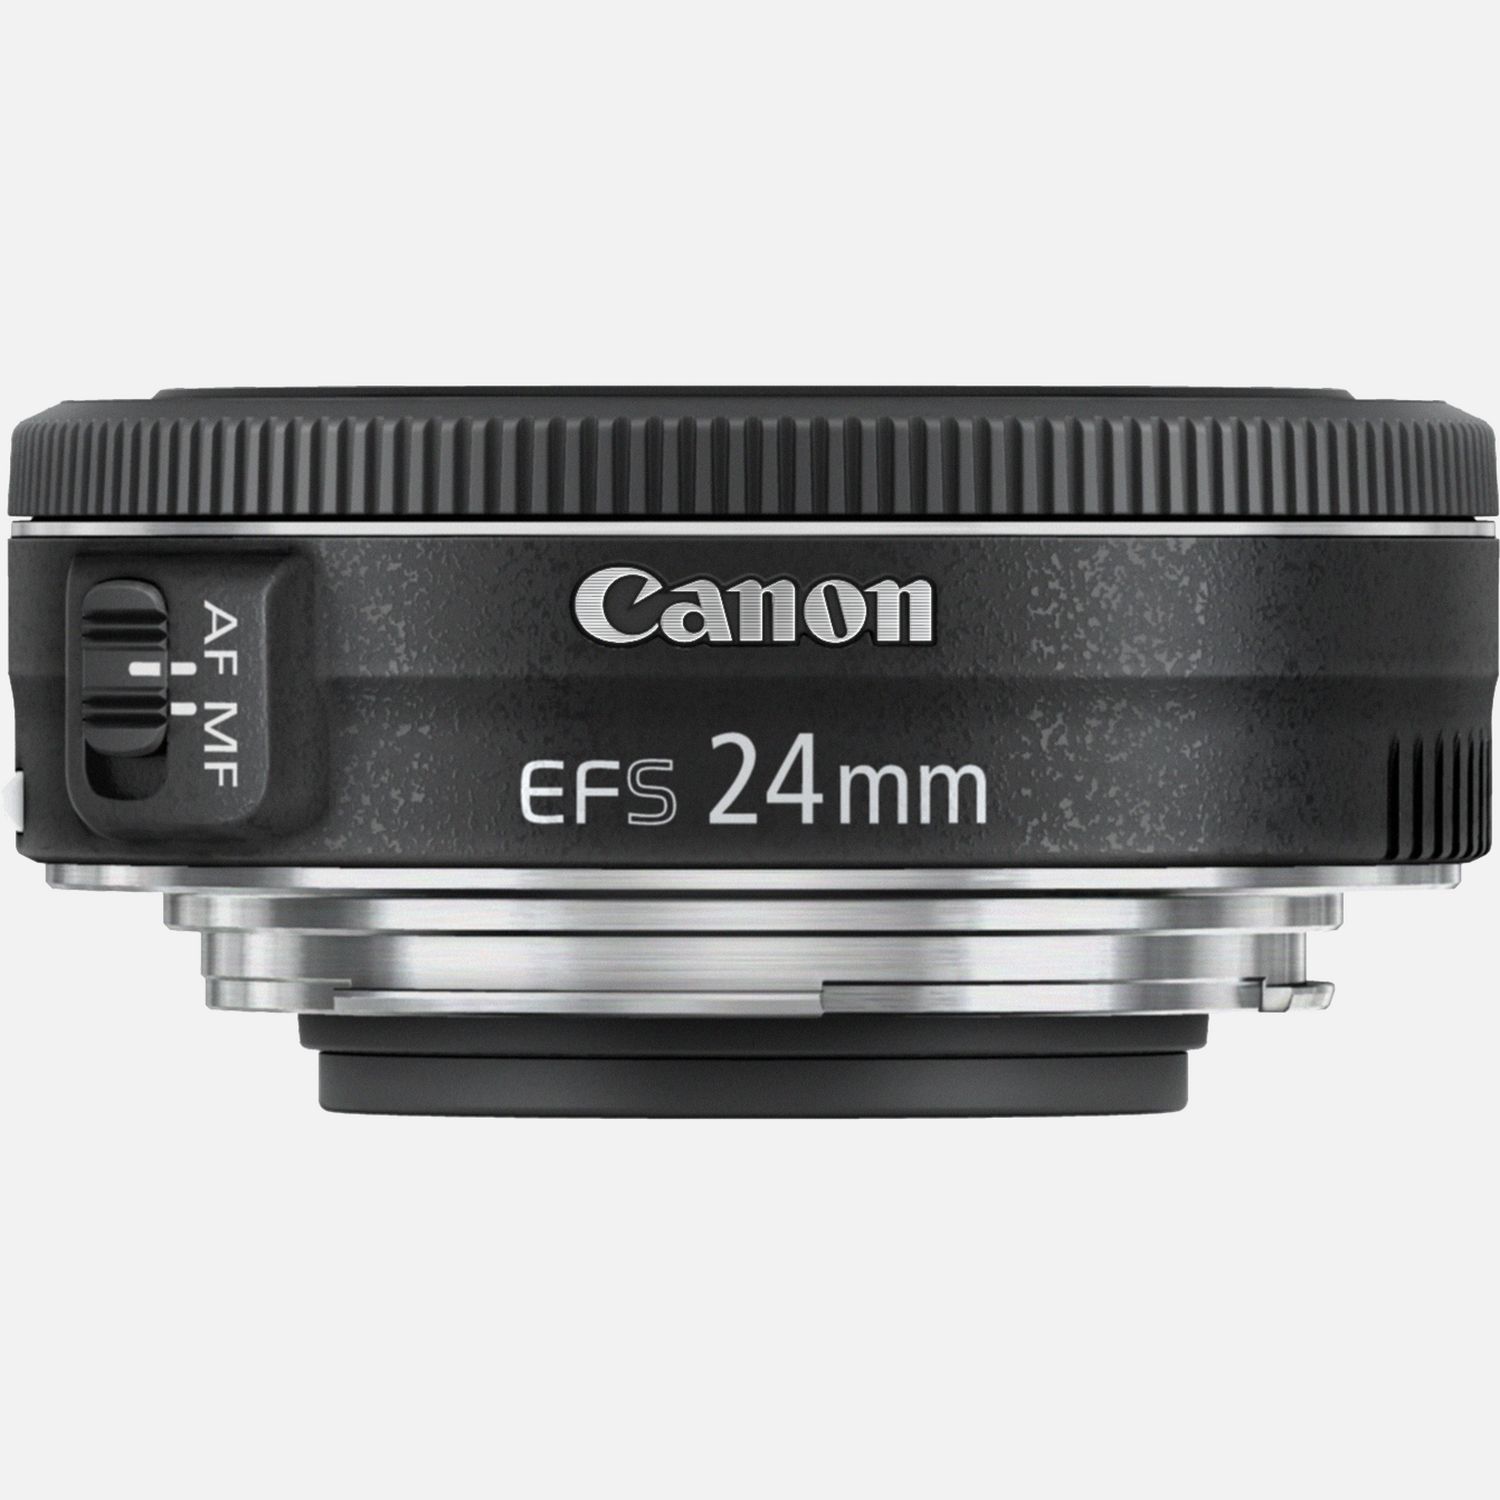 Obiettivo Canon EF-S 24mm f/2.8 STM